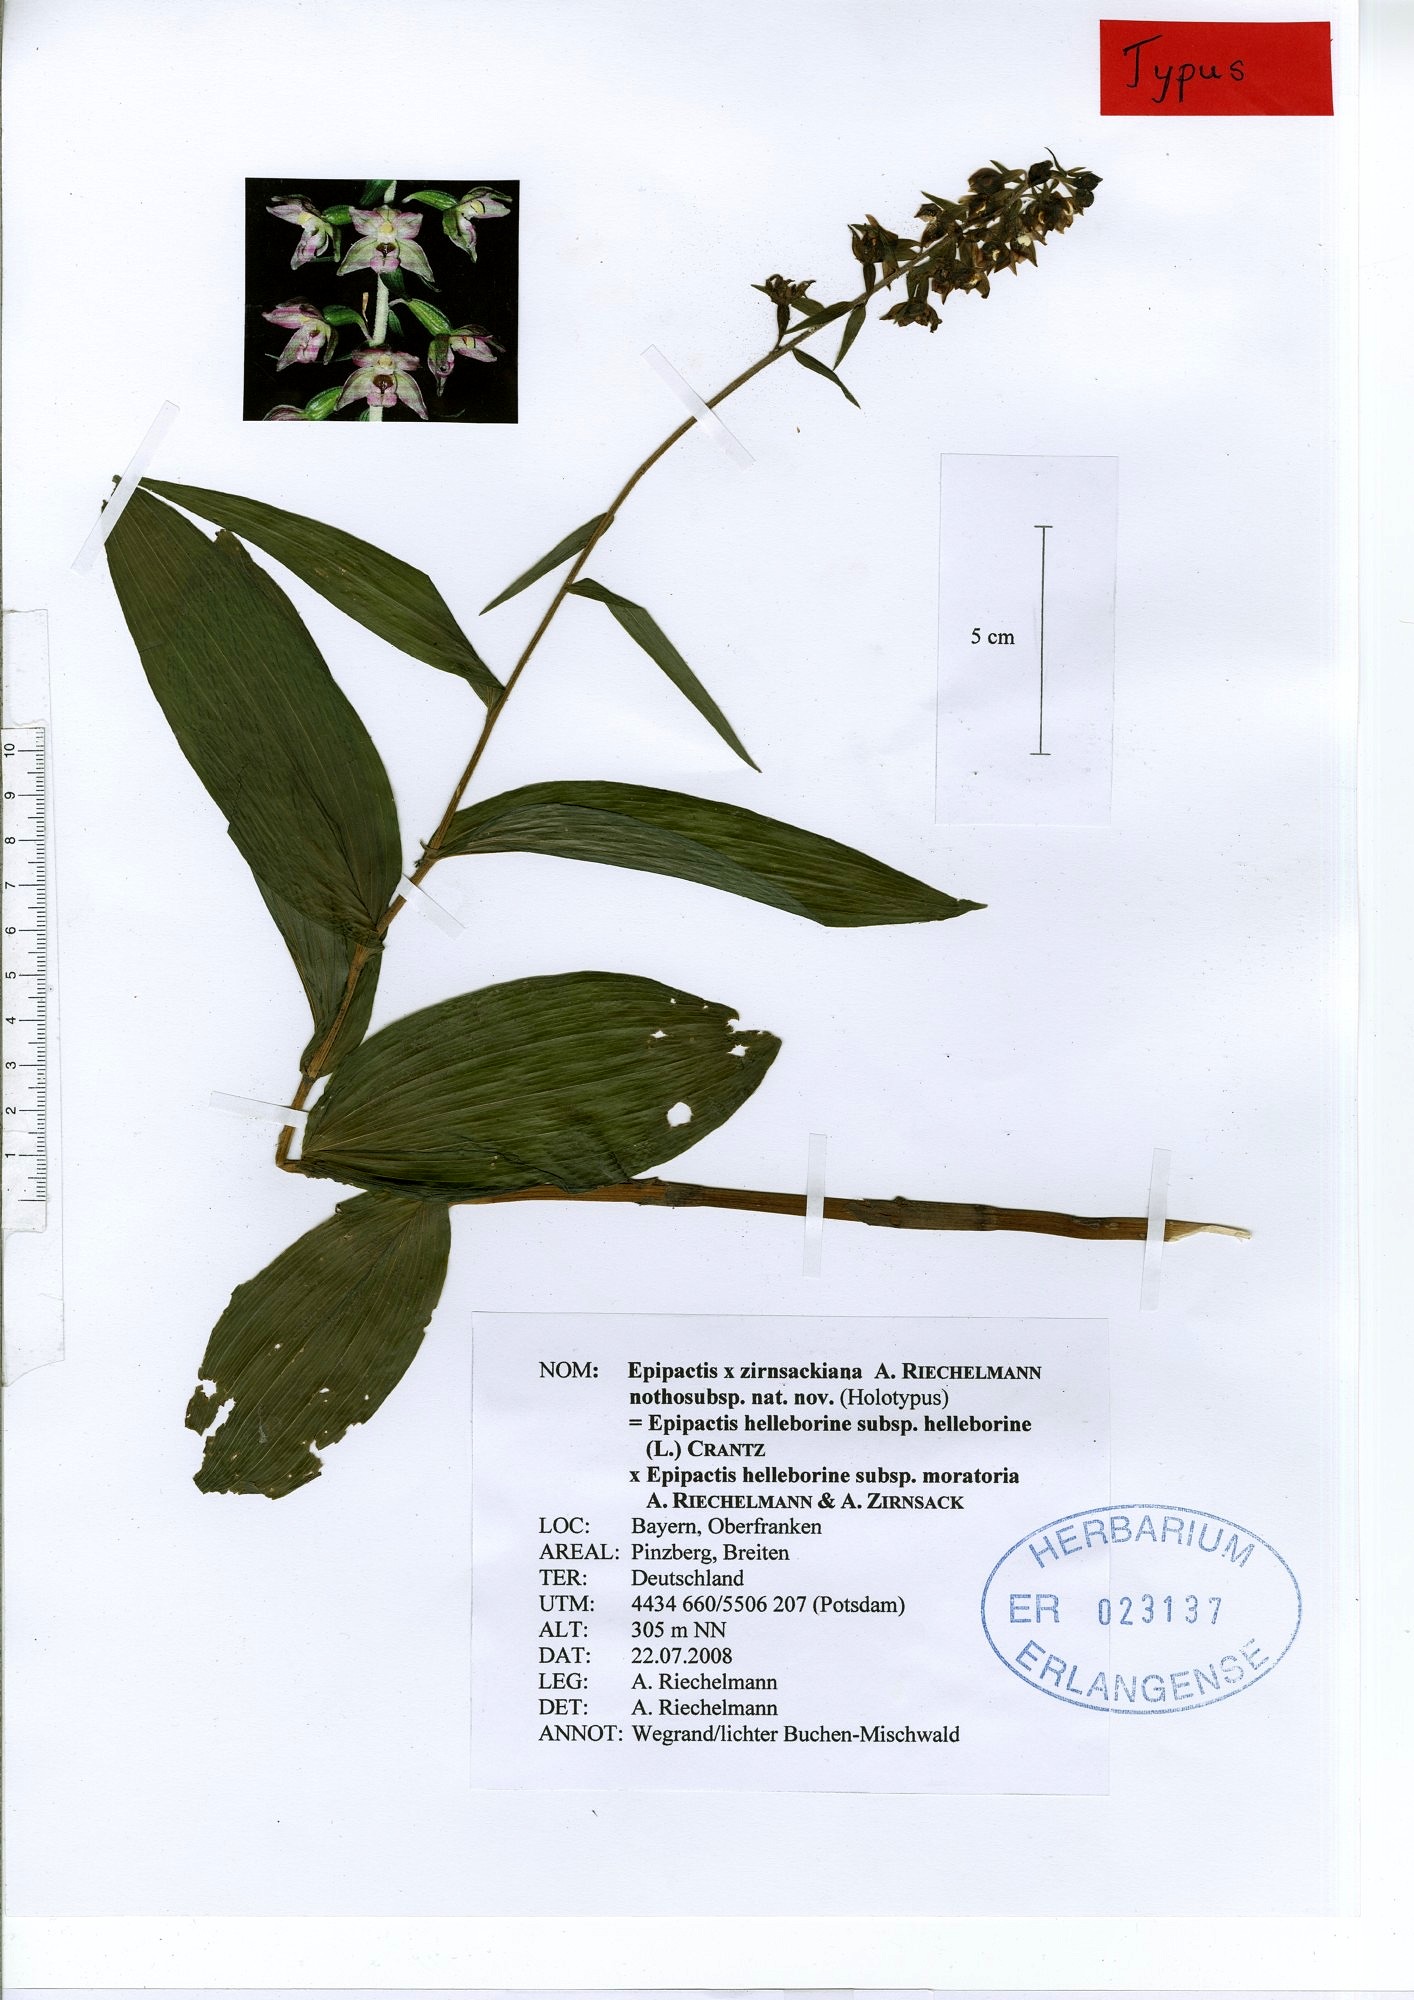 Herbarbeleg der helleborine subsp. x zirnsackiana Riech.